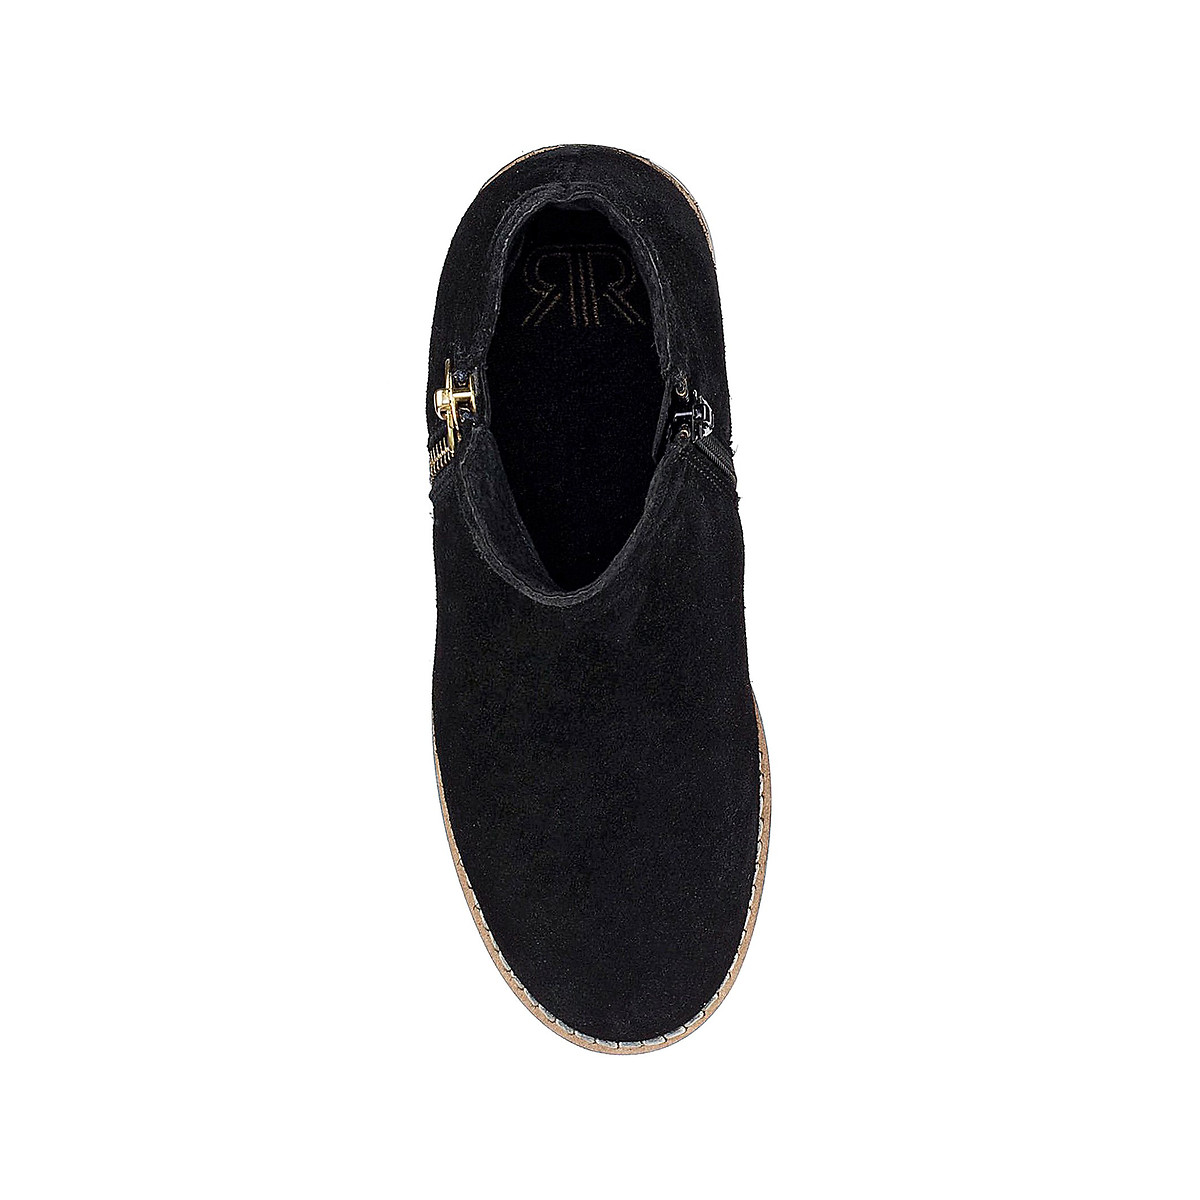 Ботинки LaRedoute На молнии кожаные 26-39 36 черный, размер 36 - фото 4